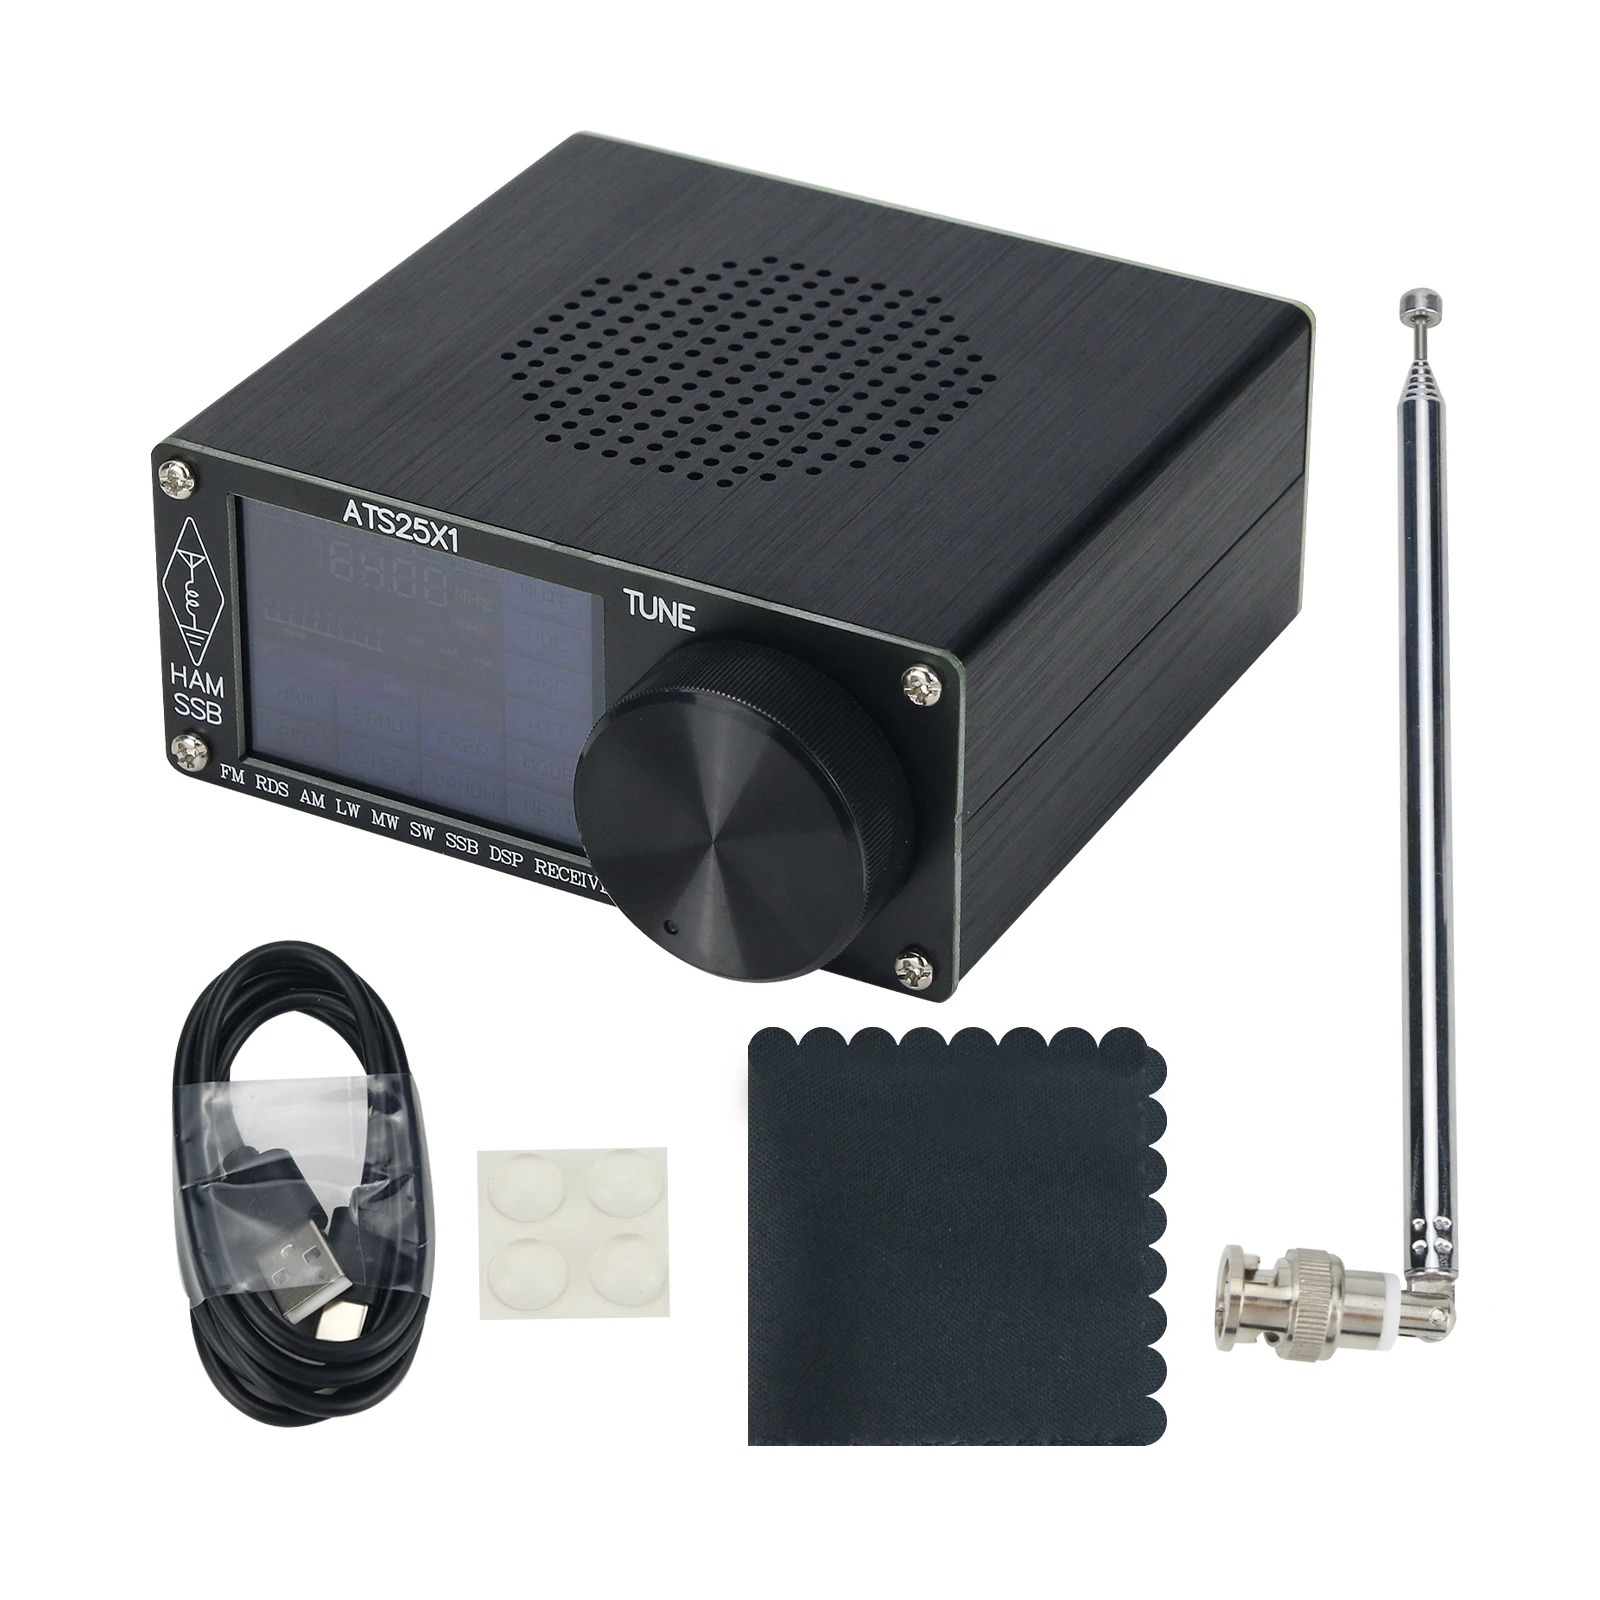 Ats-25 Si4732オールバンドラジオ受信機fm Rds Am Lw Mw Sw Ssb Dsp受信機 (2.4インチタッチスクリーン付き) -  Buy Dsp Receiver,All Band Radio Receiver,Radio Receiver Product on